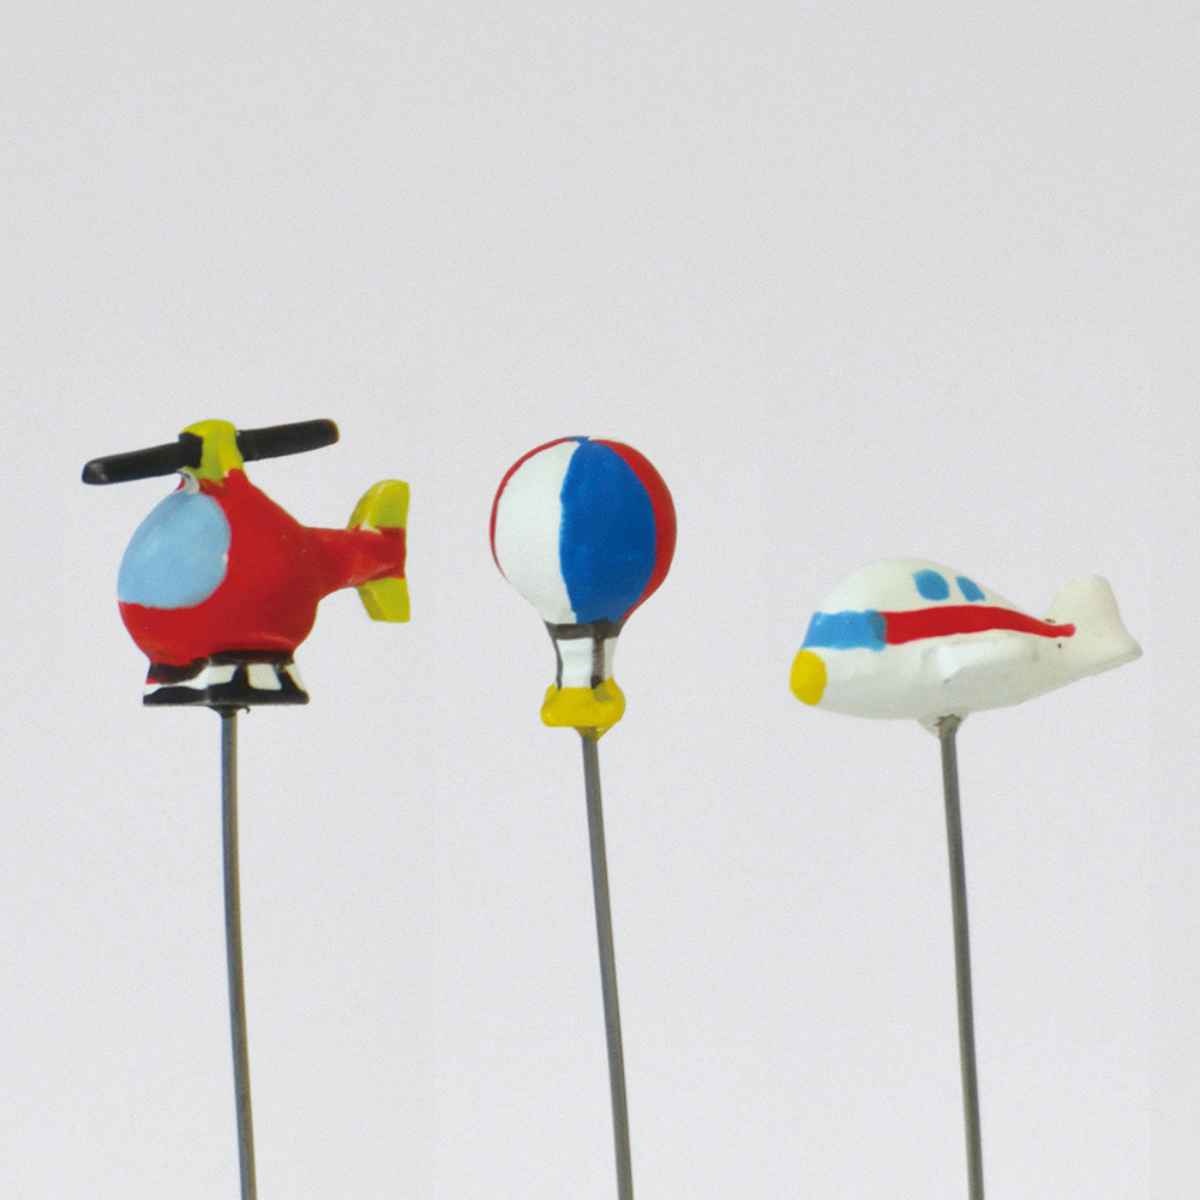 ガーデンピック ミニピック ヘリコプター 気球 飛行機 3種セット （ ピック ガーデニング雑貨 園芸 ガーデニング用品 乗り物 フラワーピック レジン インテリア 小さい 鉢植え オーナメント おしゃれ ） 【39ショップ】